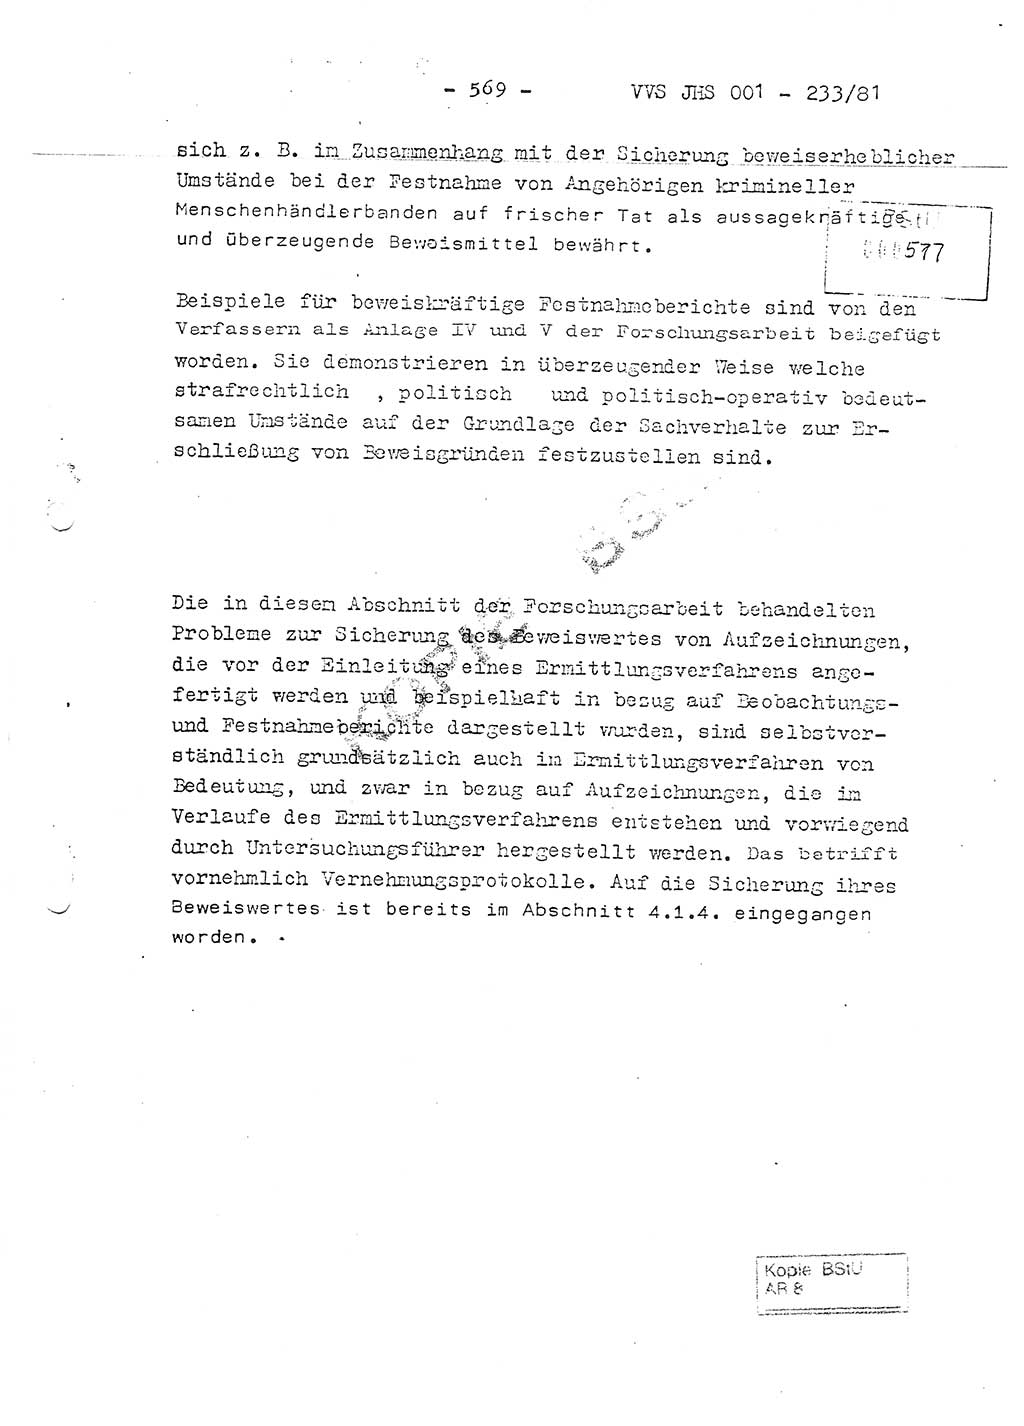 Dissertation Oberstleutnant Horst Zank (JHS), Oberstleutnant Dr. Karl-Heinz Knoblauch (JHS), Oberstleutnant Gustav-Adolf Kowalewski (HA Ⅸ), Oberstleutnant Wolfgang Plötner (HA Ⅸ), Ministerium für Staatssicherheit (MfS) [Deutsche Demokratische Republik (DDR)], Juristische Hochschule (JHS), Vertrauliche Verschlußsache (VVS) o001-233/81, Potsdam 1981, Blatt 569 (Diss. MfS DDR JHS VVS o001-233/81 1981, Bl. 569)